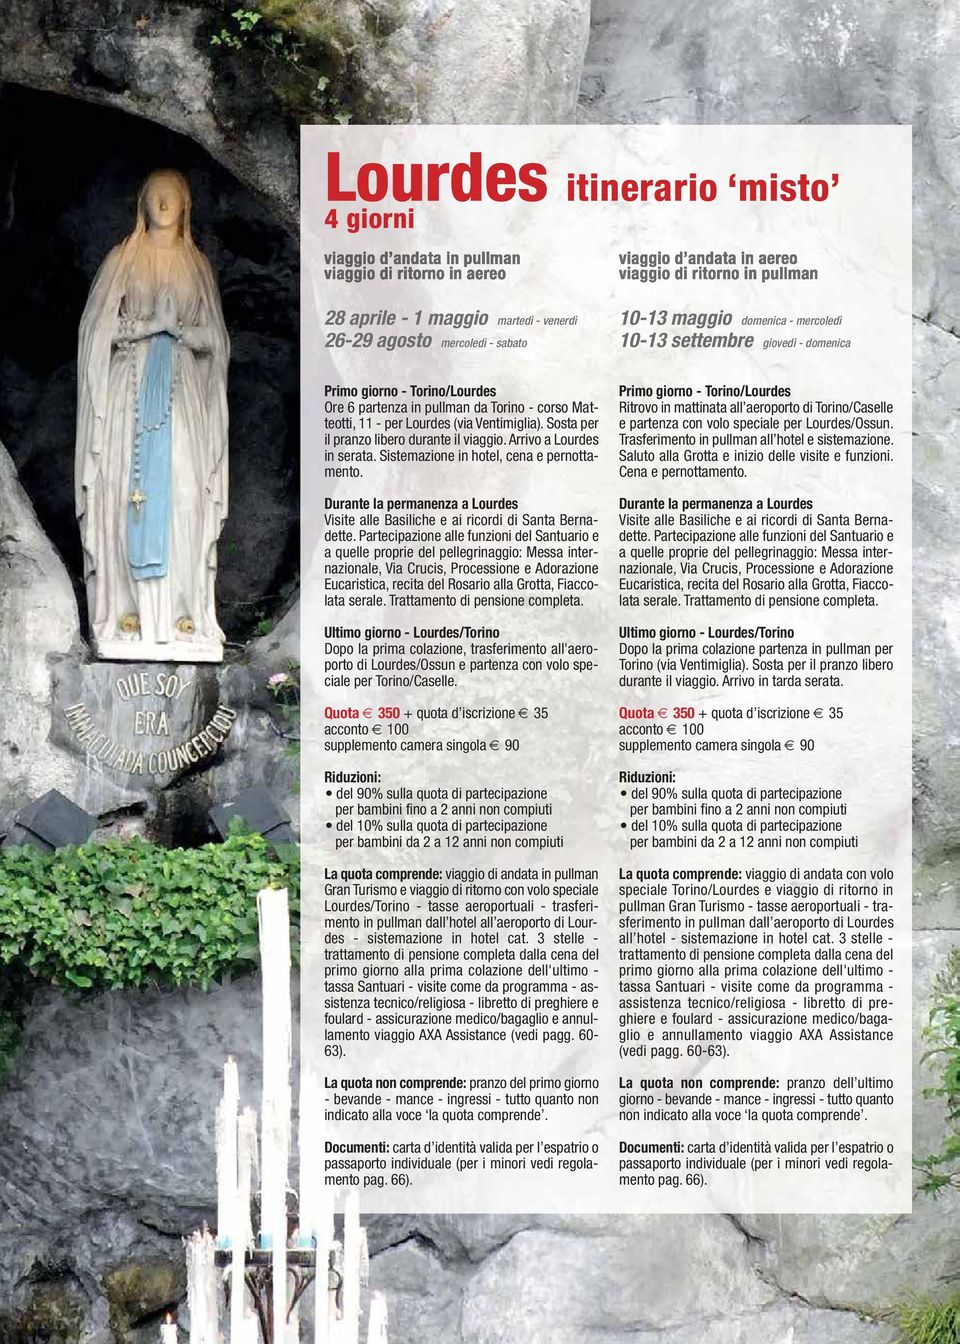 Sistemazione in hotel, cena e pernottamento. Durante la permanenza a Lourdes Visite alle Basiliche e ai ricordi di Santa Bernadette.